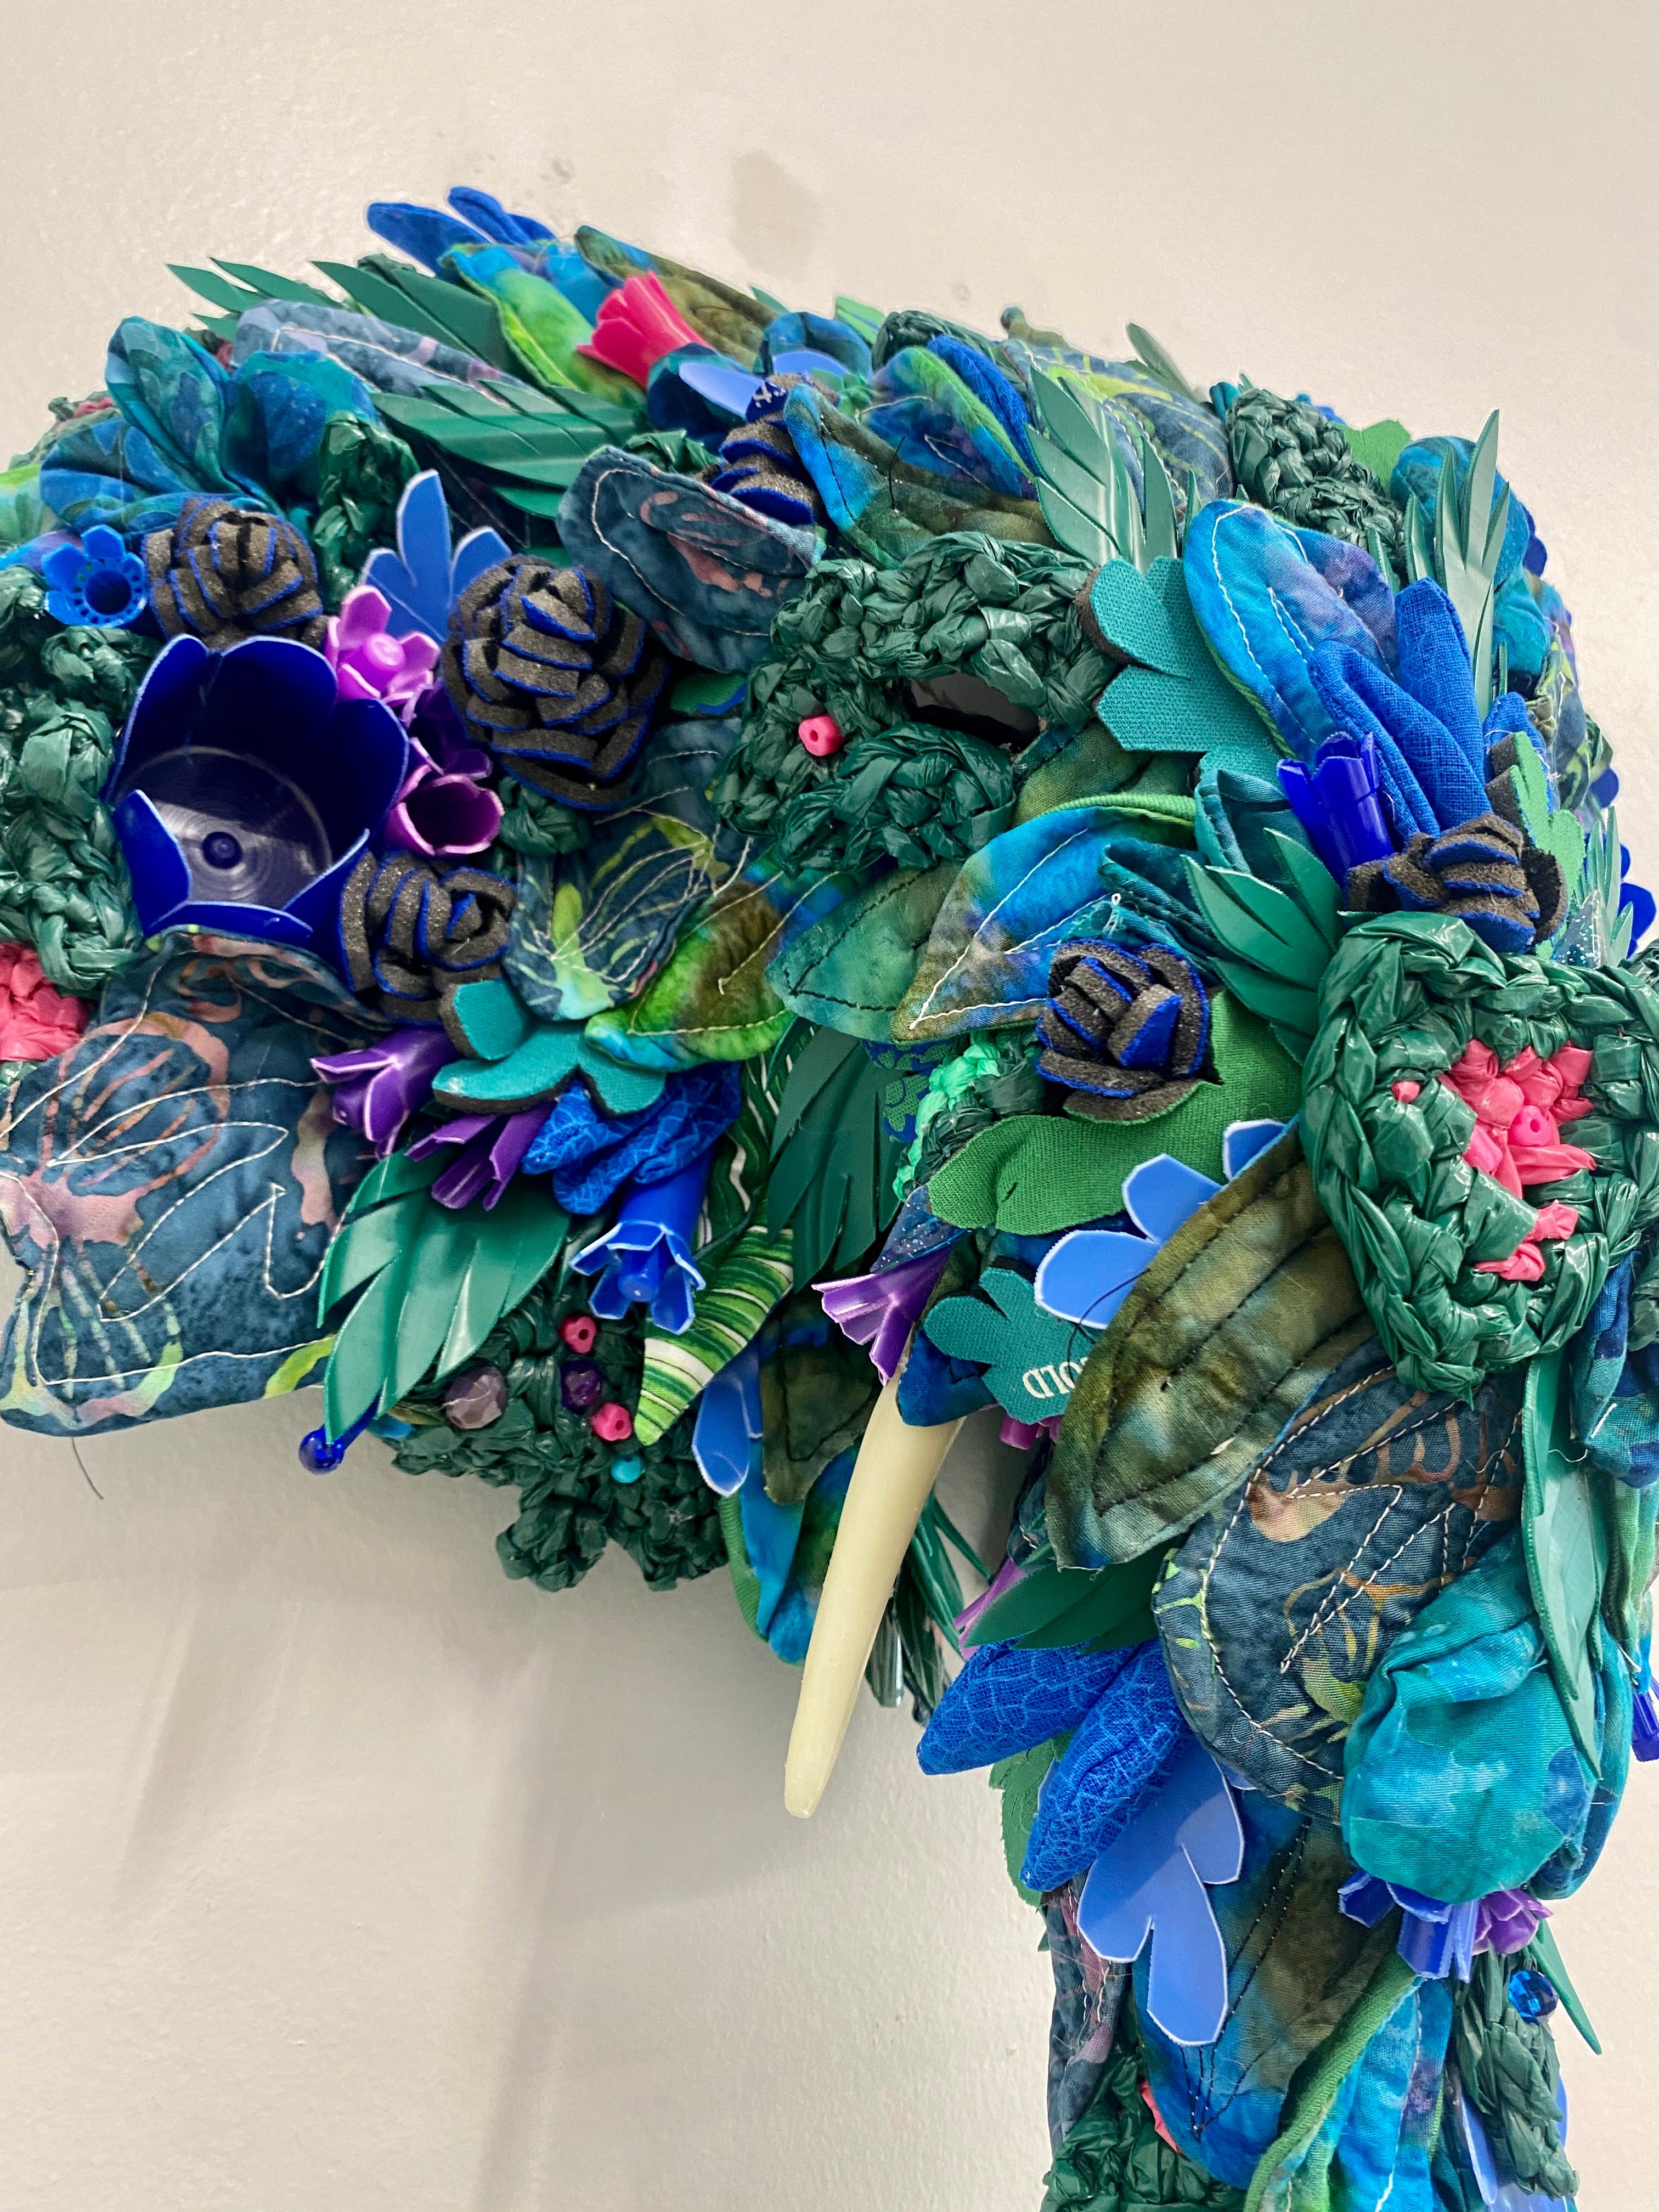 Jardinière éléphant, sculpture murale contemporaine, assemblage de matériaux recyclés - Bleu Figurative Sculpture par Calder Kamin